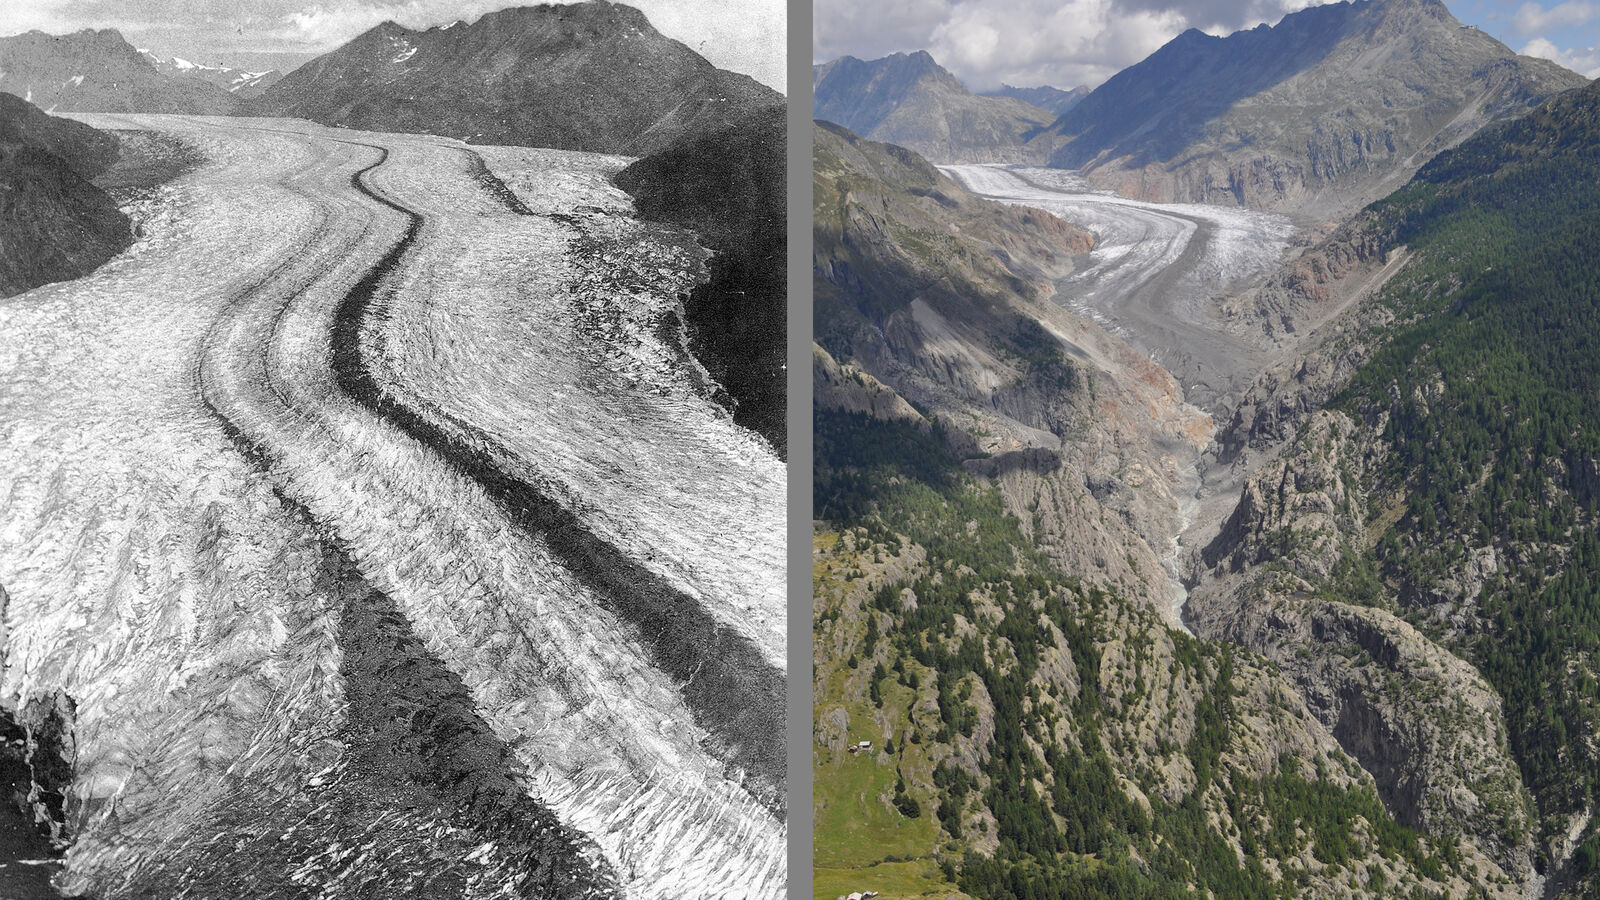 Grosser Aletschgletscher 1856 und 2010